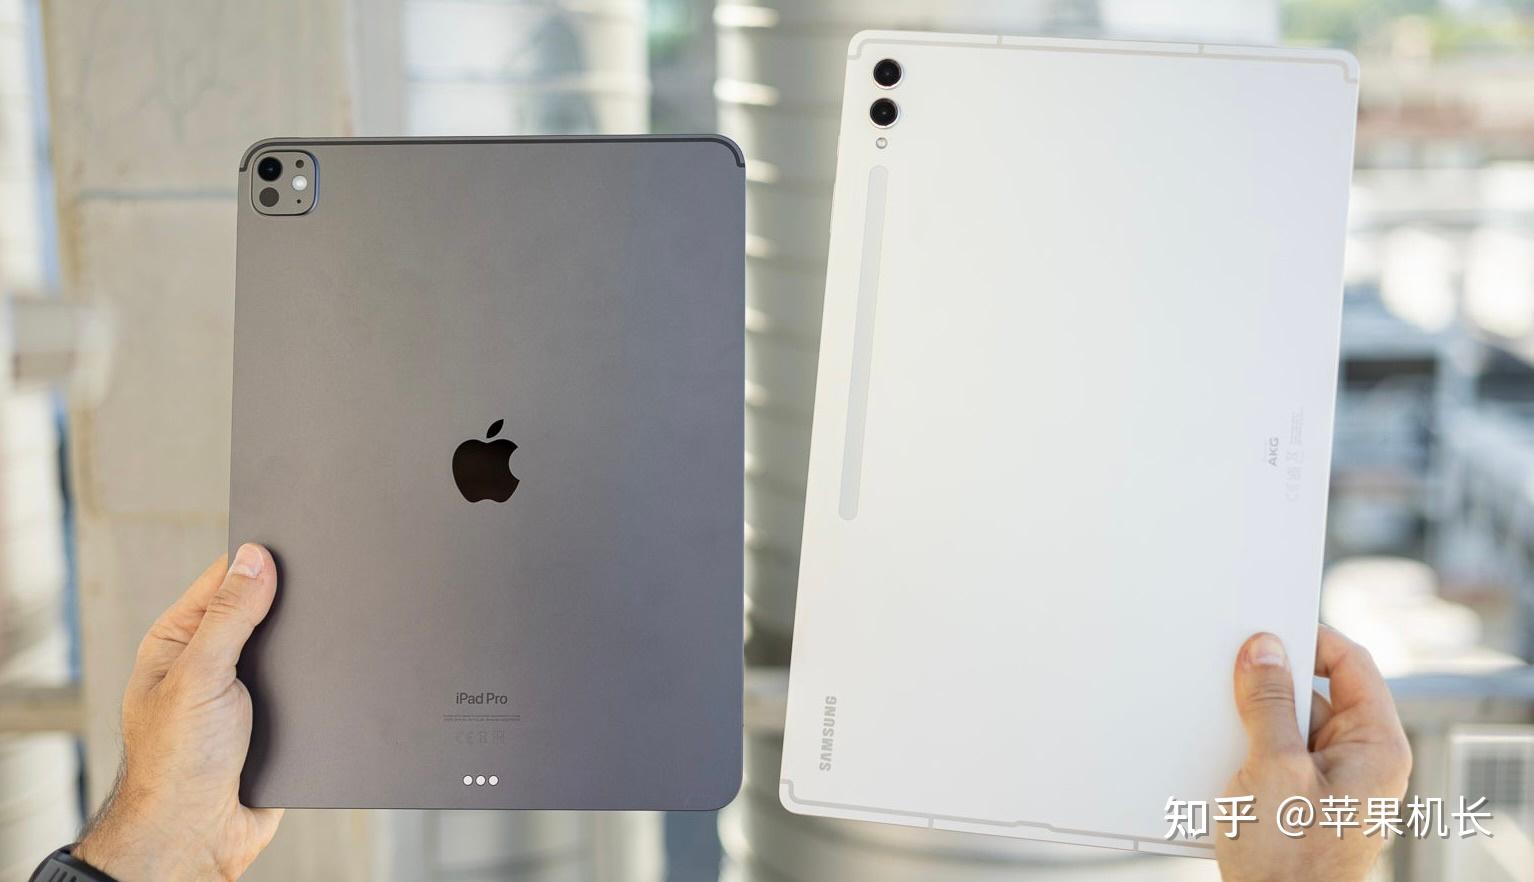 三星s9 ultr与苹果m4芯片ipad pro对比:价格相差3500元该怎么选?